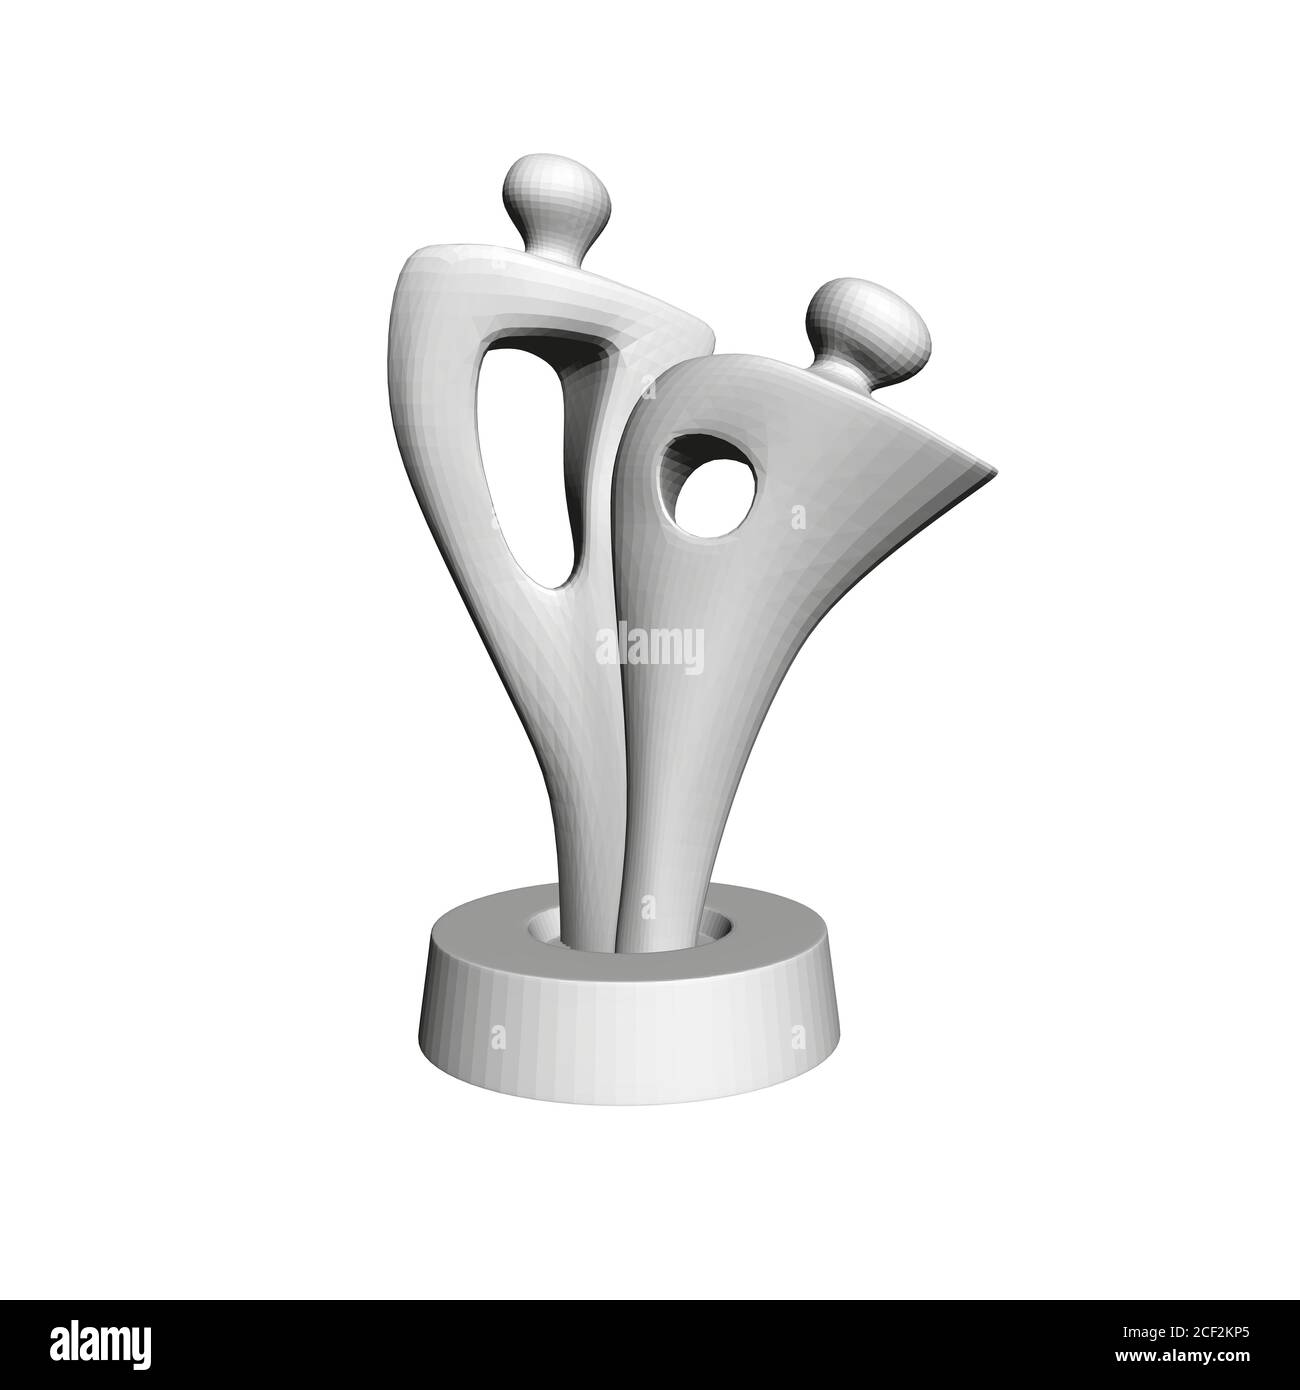 Modèle d'une statue abstraite avec deux formes humaines. La statue est isolée sur fond blanc. 3D. Illustration vectorielle Illustration de Vecteur